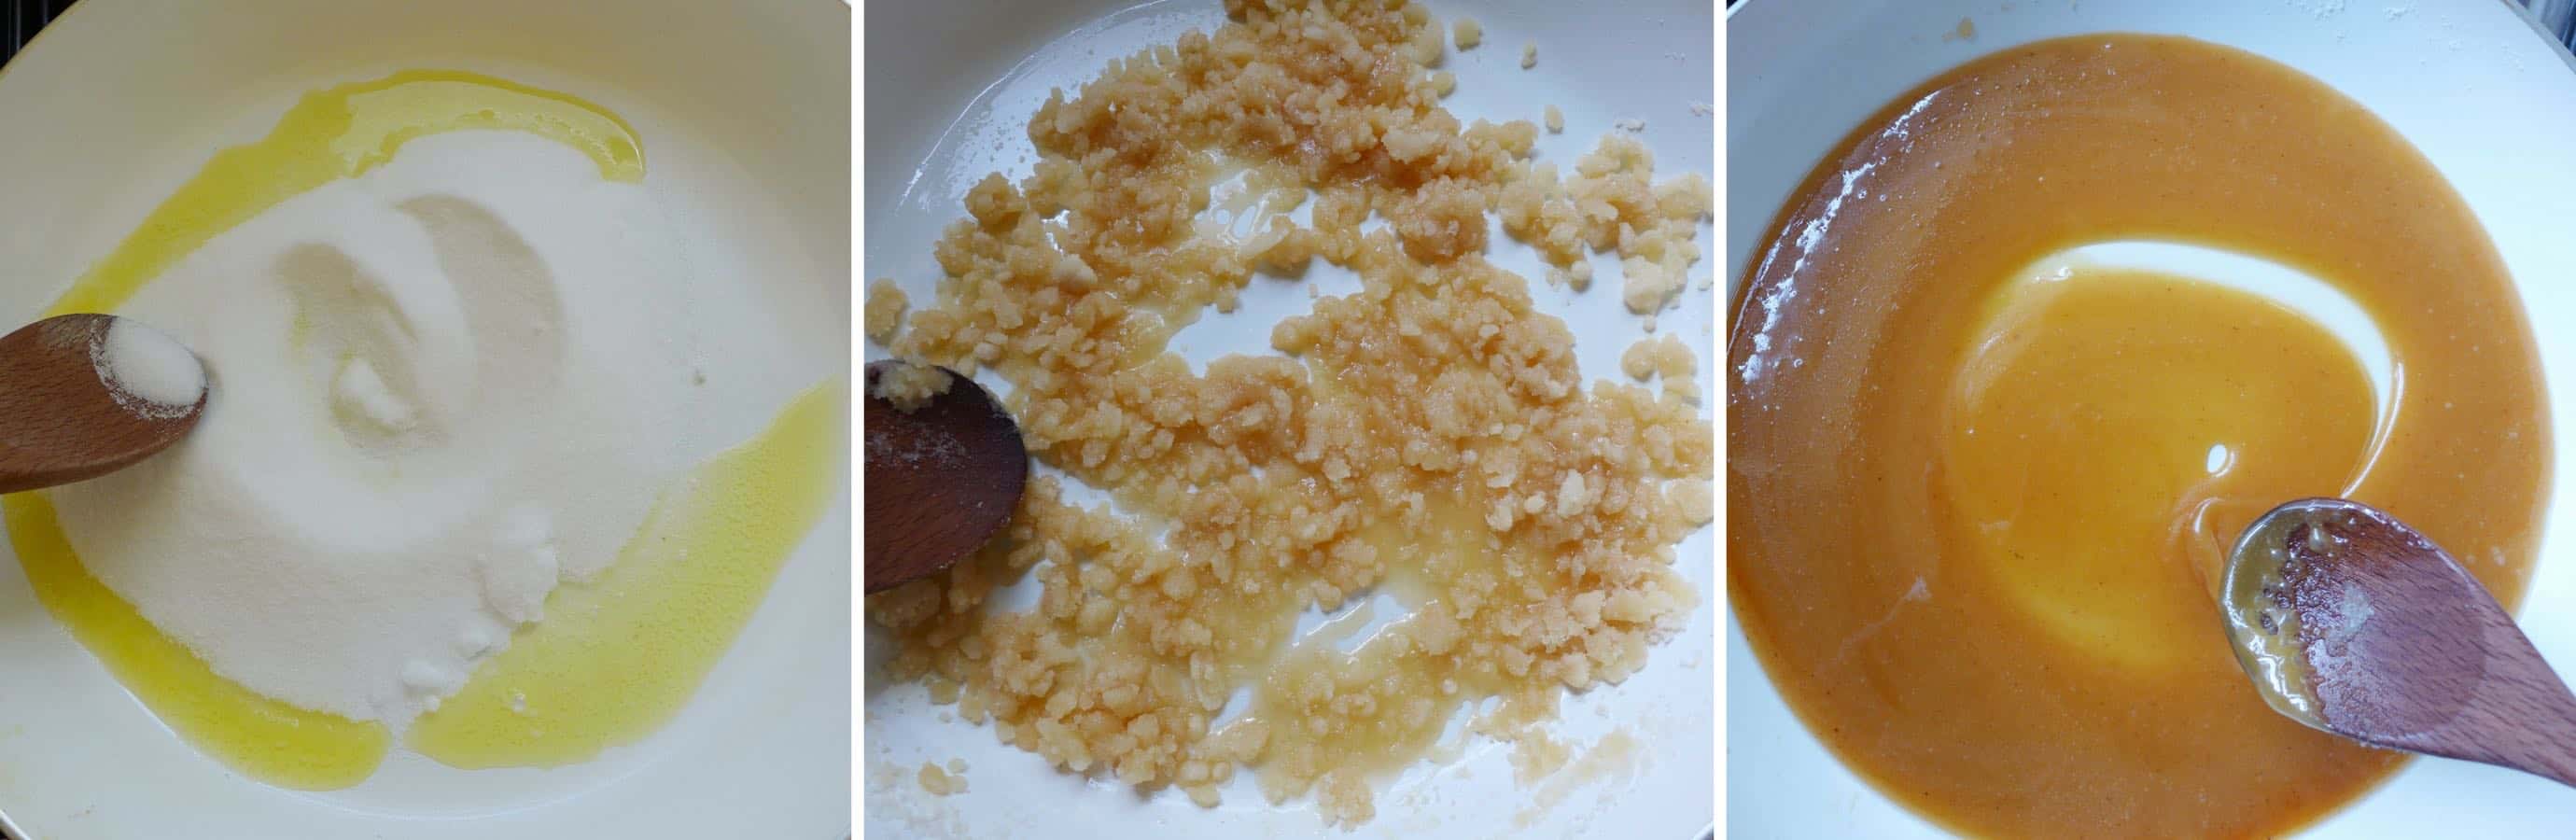 Melt sugar in a pan